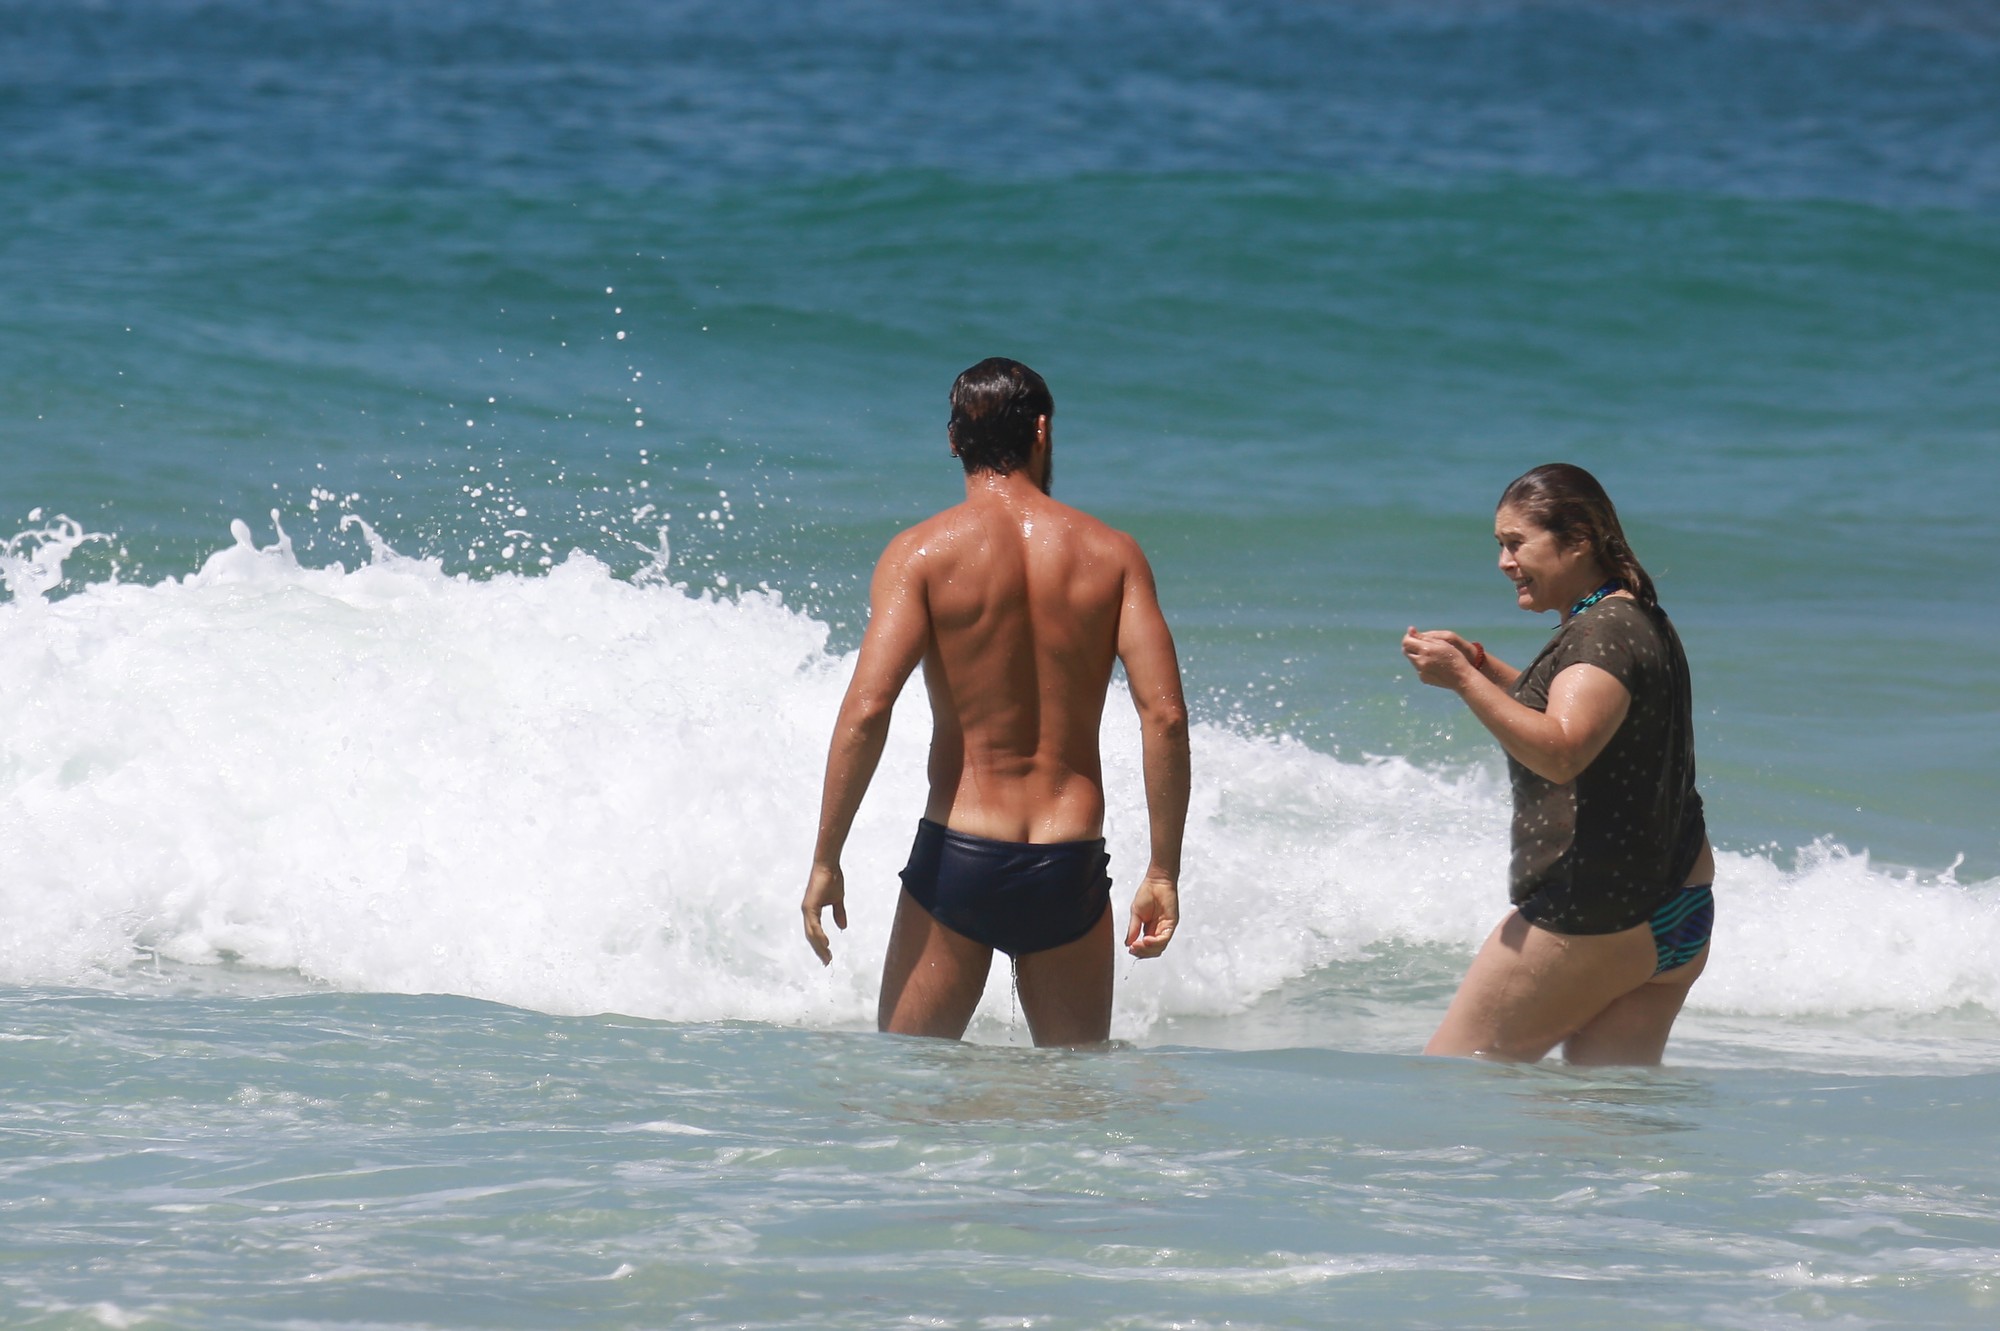 Com uma sunga azul, Cauã Reymond fez sucesso com as banhistas que estavam na praia de Joatinga, que não disfarçaram na hora de 'dar um confere' em Cauã (também, né?). Para completar o momento êxtase das fãs, o ator acabou 'pagando cofrinho' ao mergulhar. 